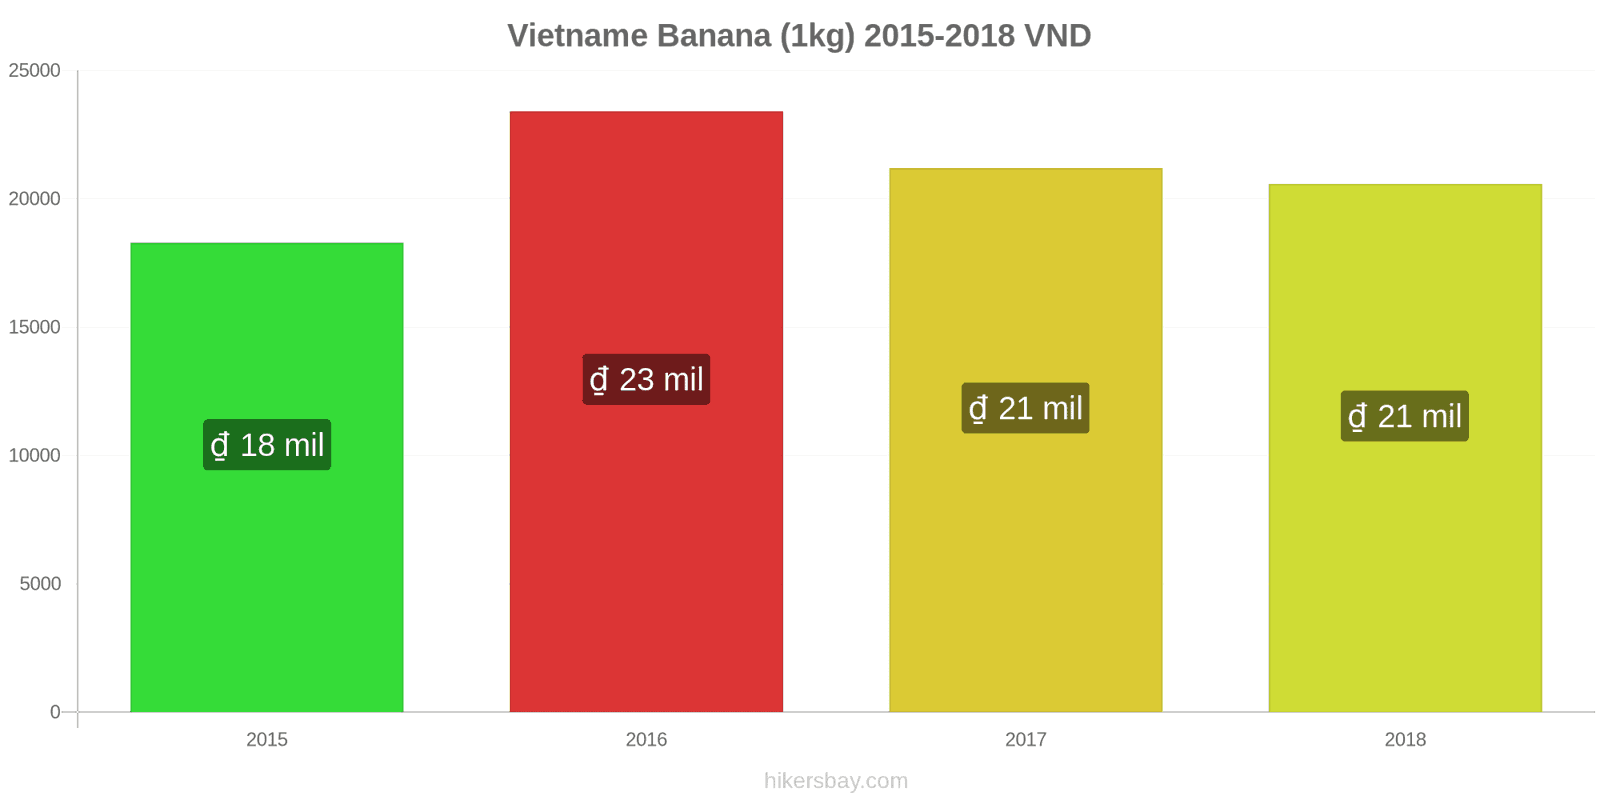 Vietname mudanças de preços Bananas (1kg) hikersbay.com